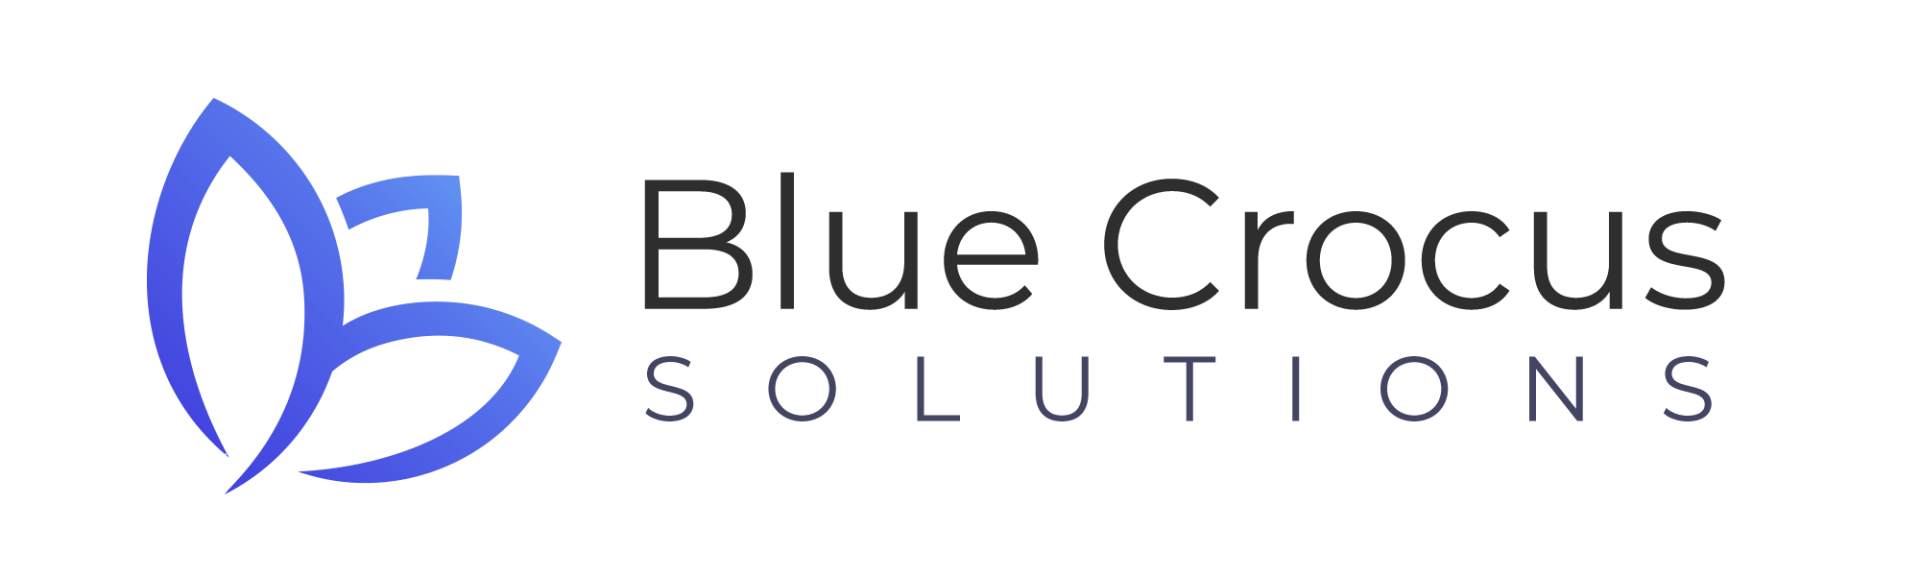 SPARKNB Sponsors, Blue Crocus Solutions, SPARKMB